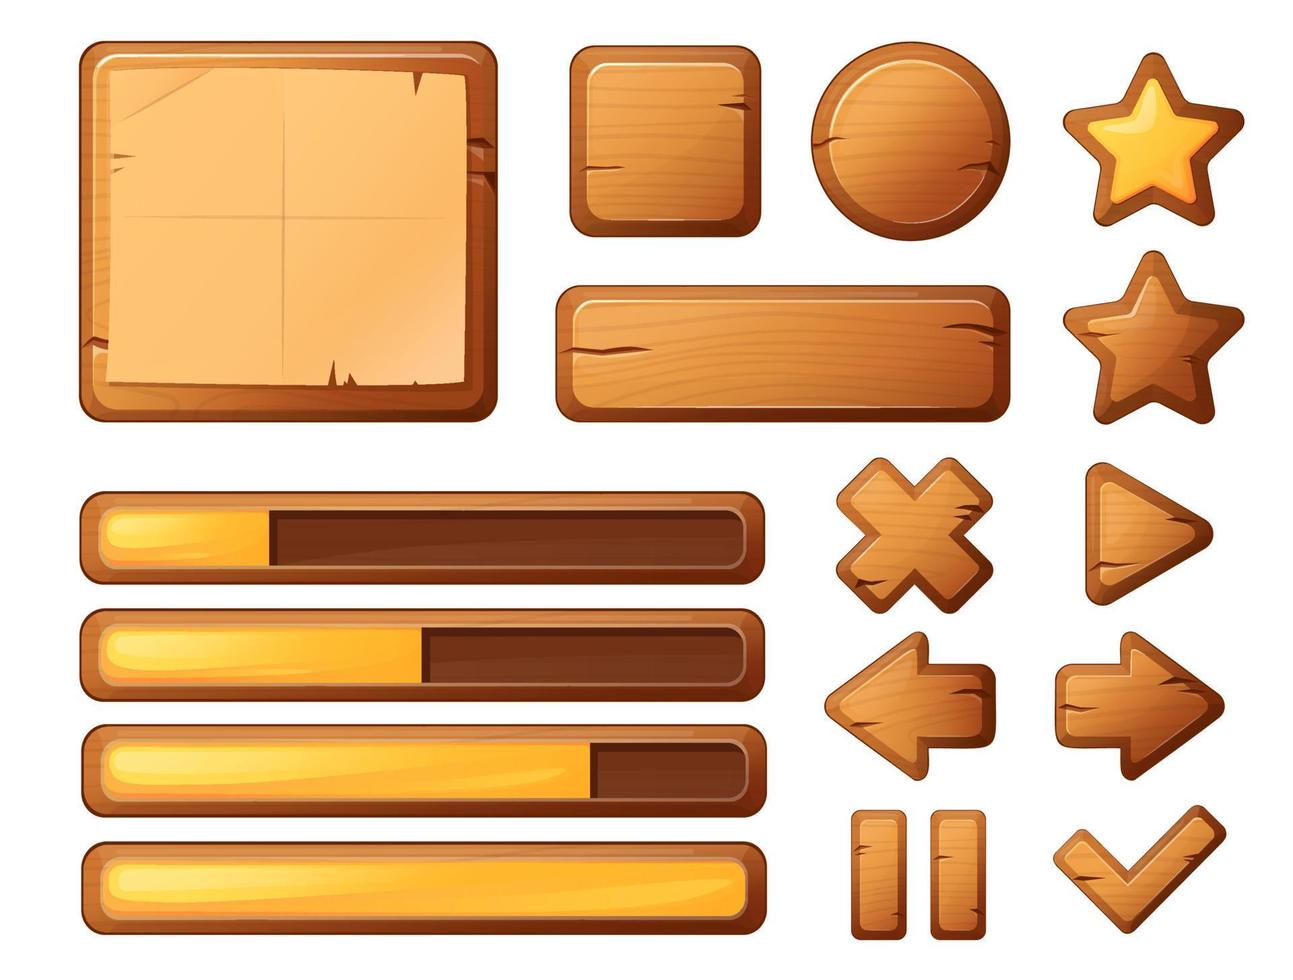 houten knoppen voor de gebruikersinterface van het spel, gebruikersinterface-elementen geïsoleerd op een witte achtergrond. cartoon vectorillustratie. vector